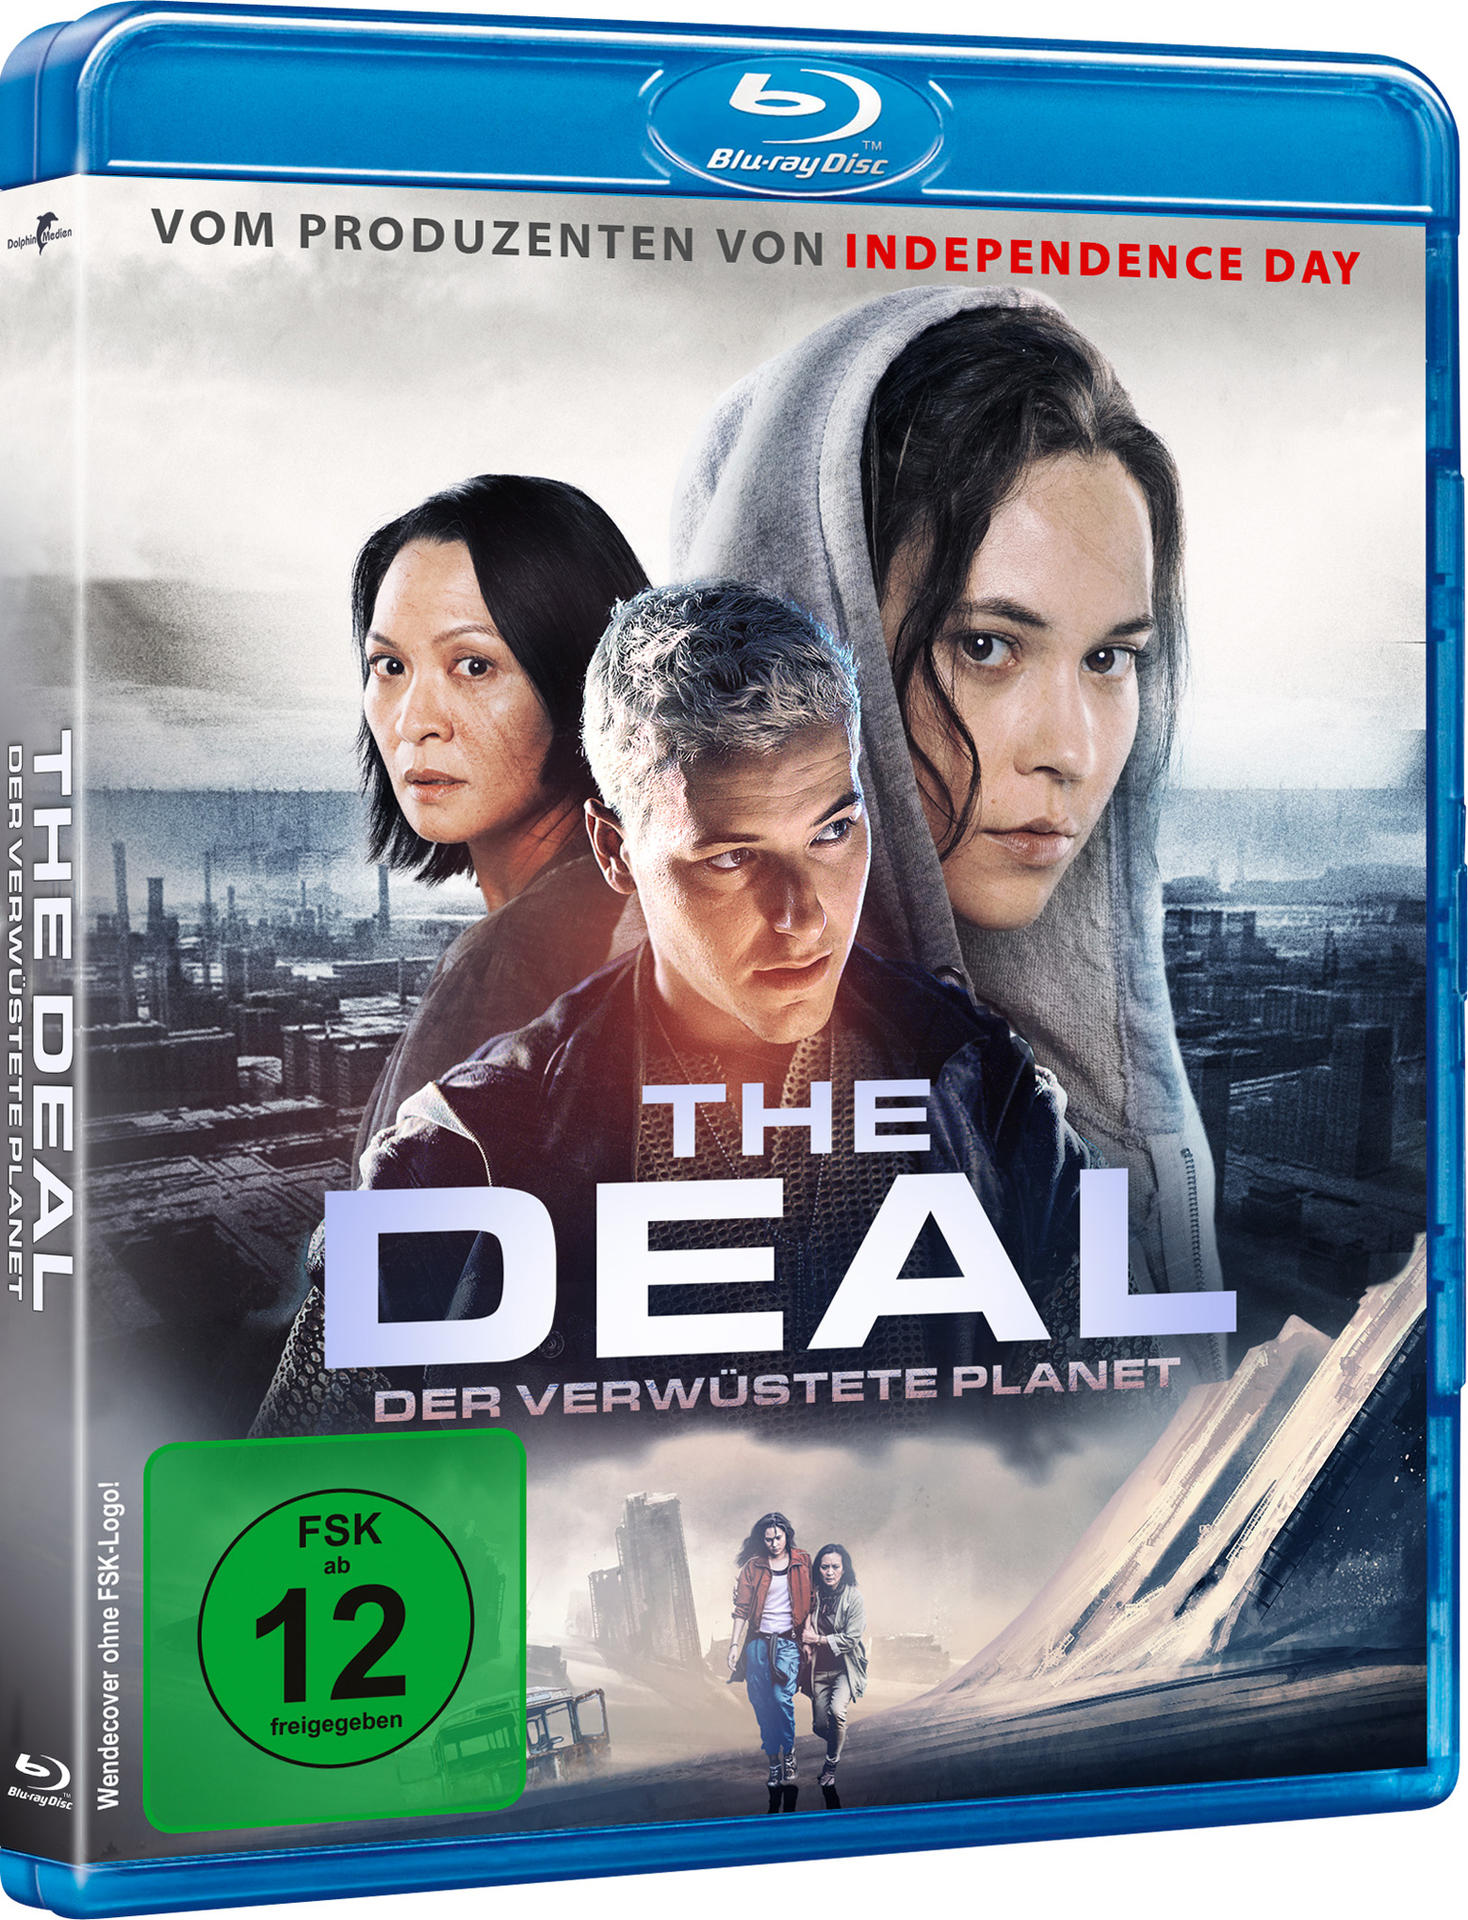 Deal Planet - The Der Blu-ray verwüstete